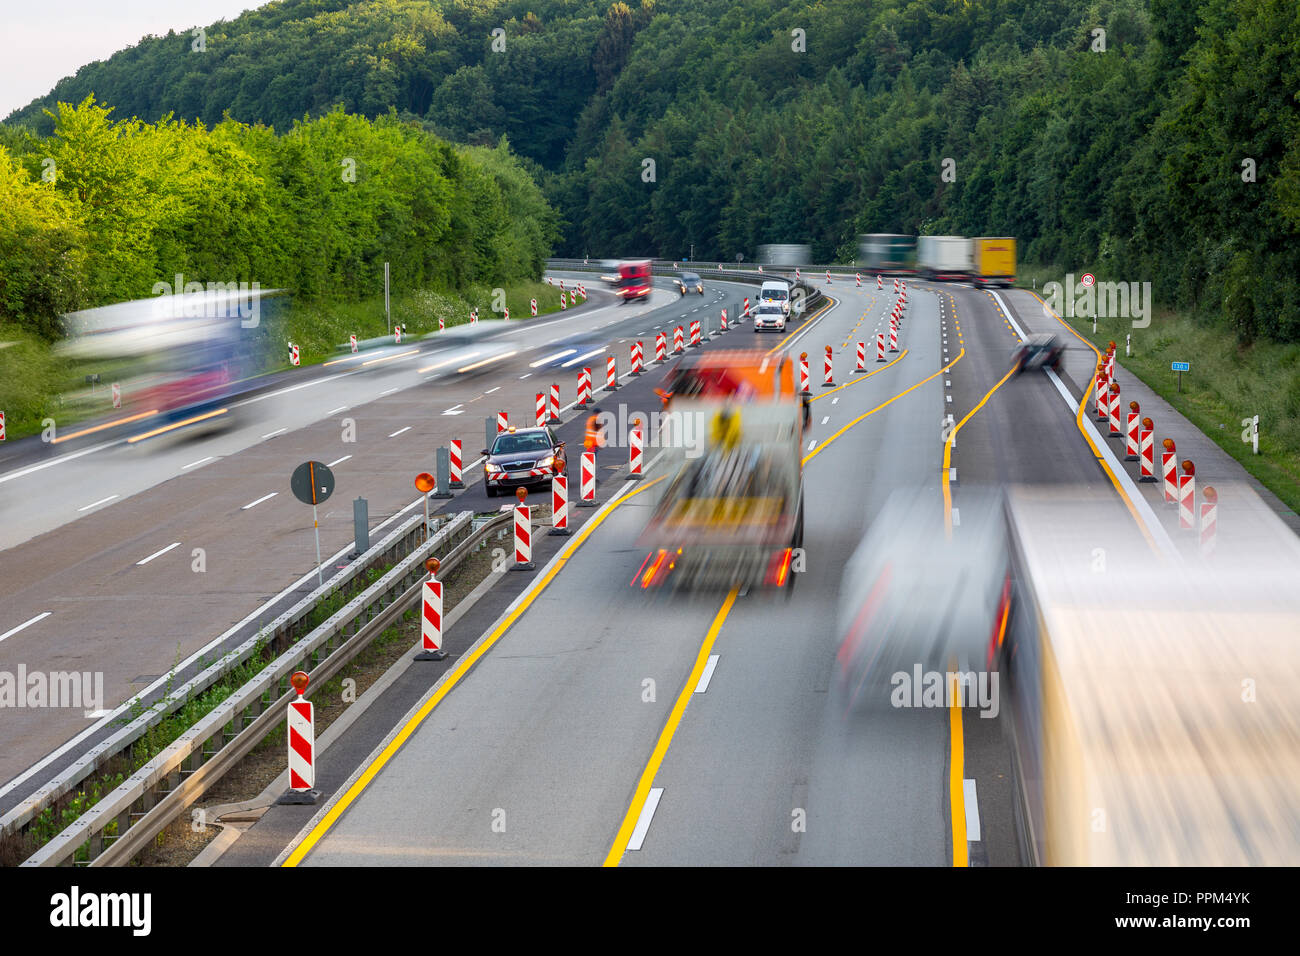 Idstein, Allemagne, Autoroute Autobahn 3, Mai 28th, 2018 - une autoroute allemande chantier de construction routière, avec les camions et voitures qui passent la zone dangereuse Banque D'Images